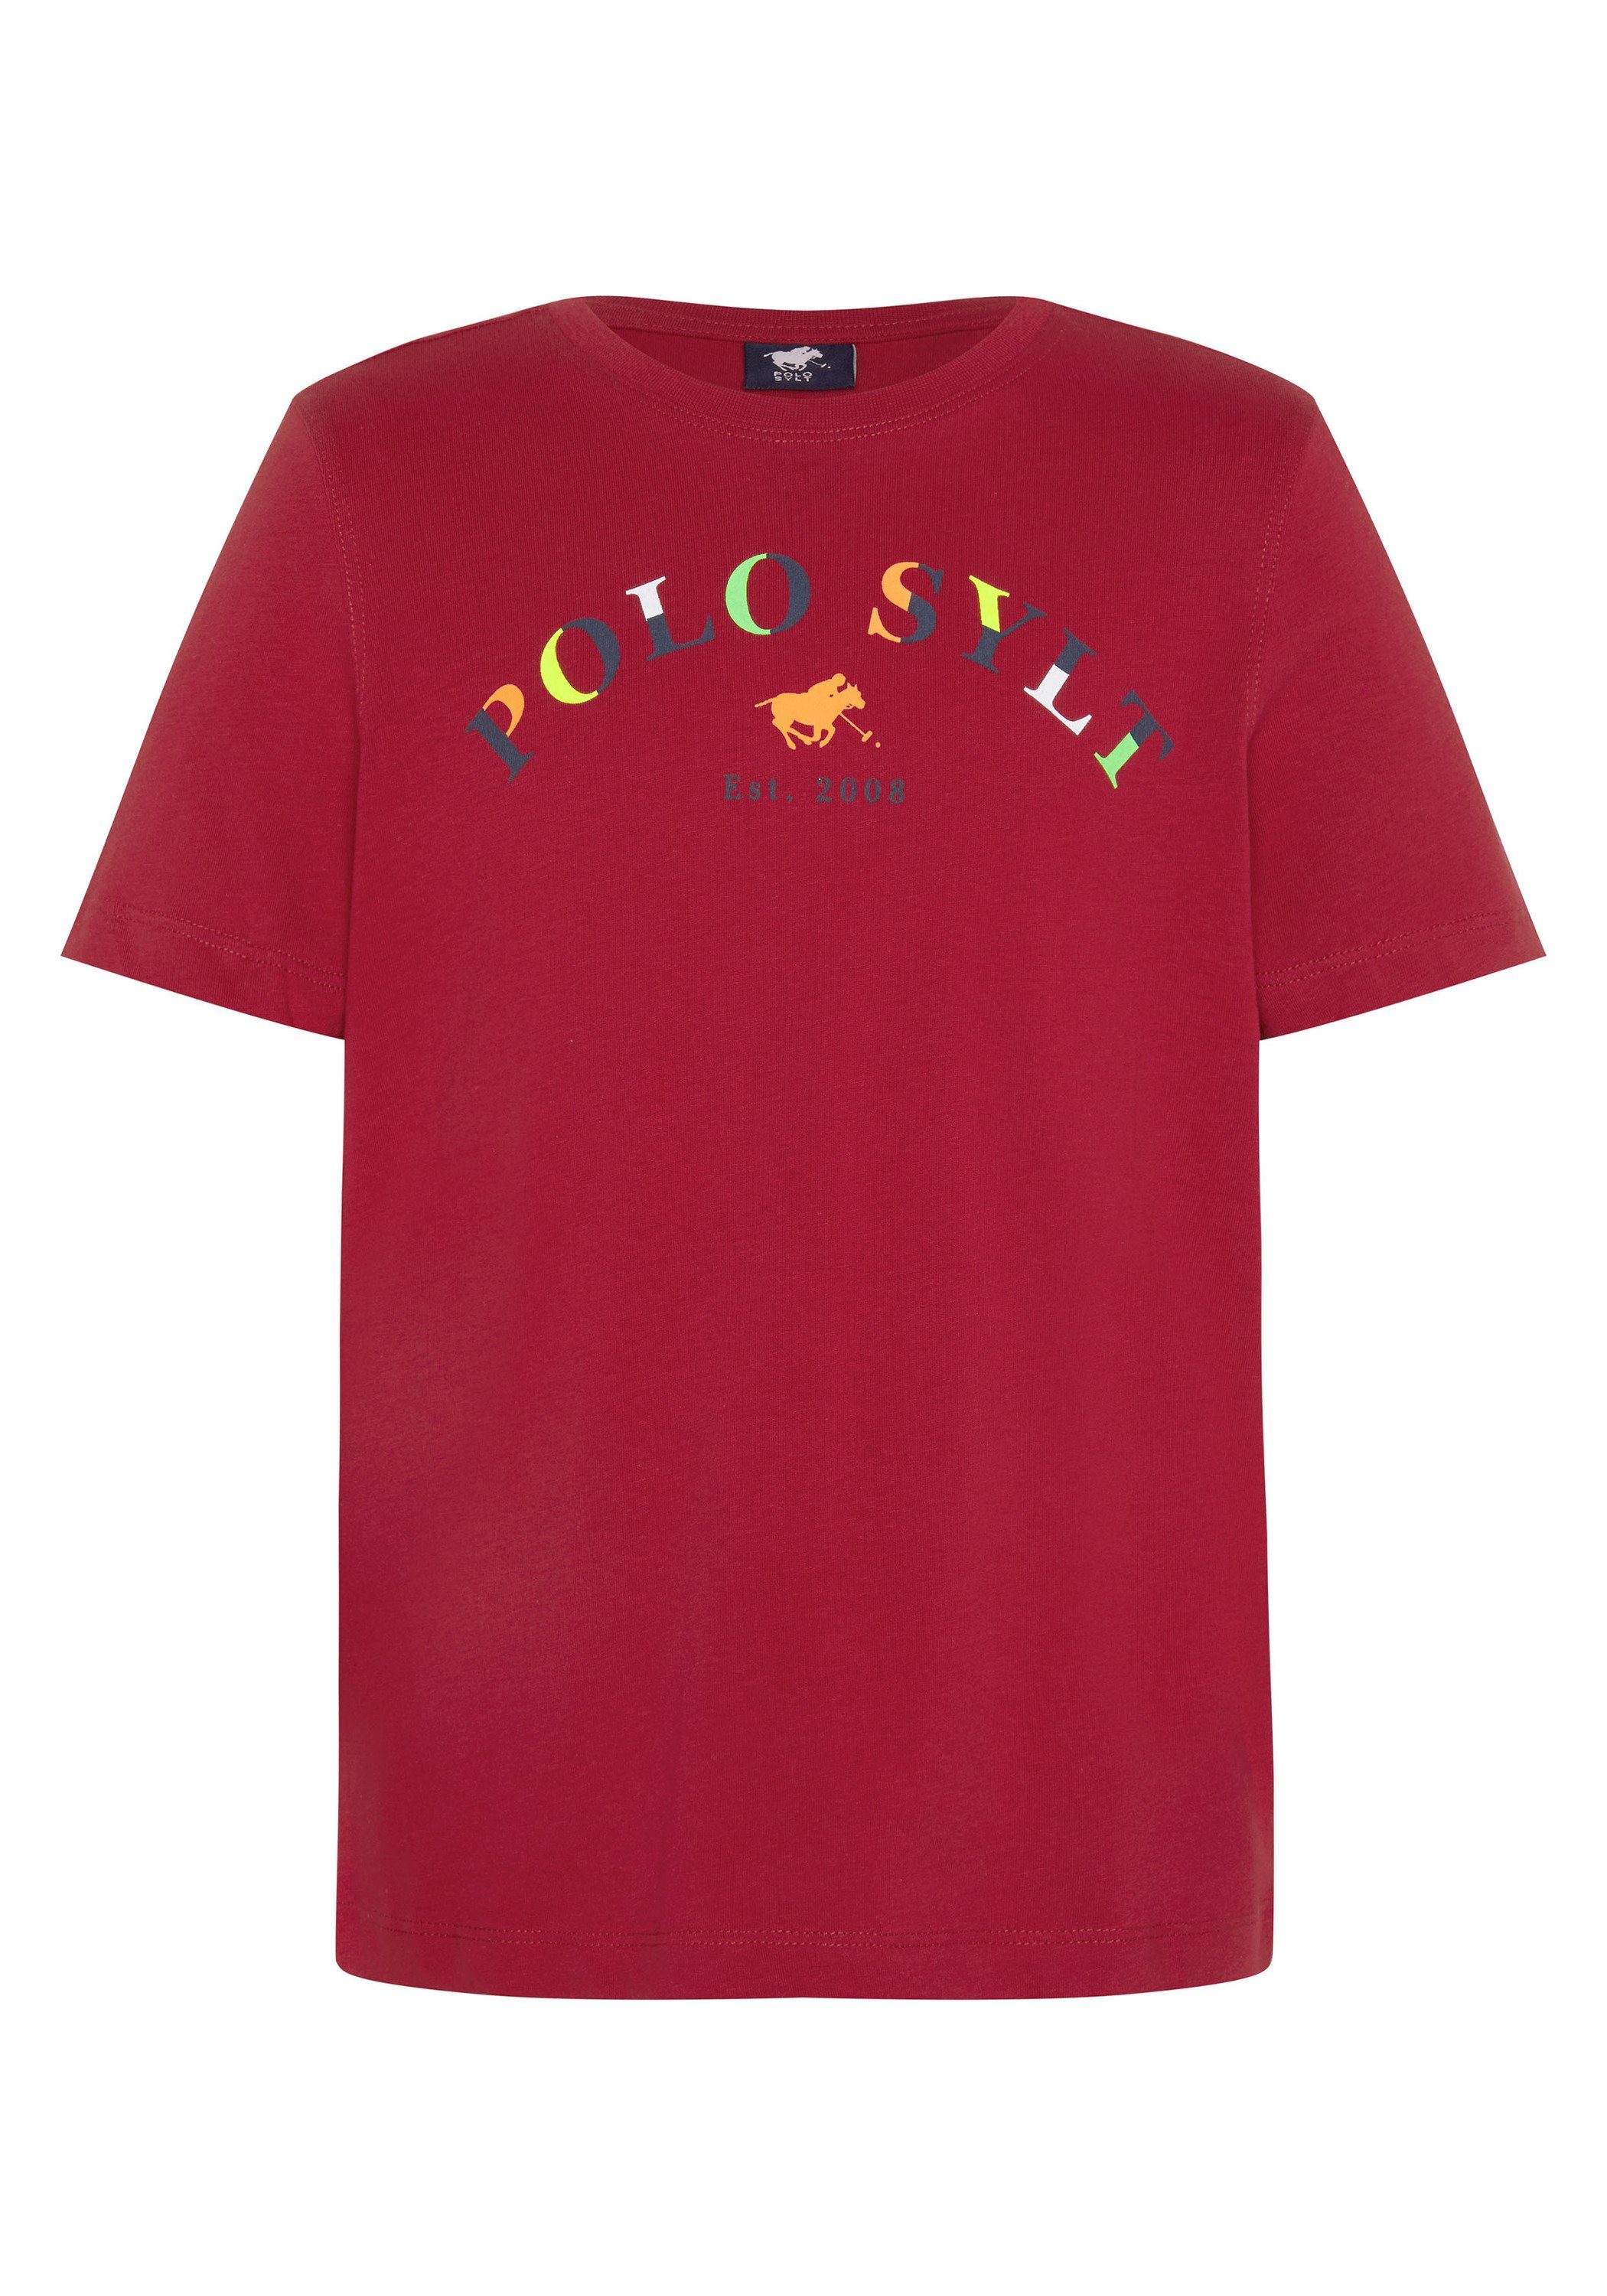 Pepper Logoprint Print-Shirt mit Chili 19-1557 farbenfrohem Polo Sylt